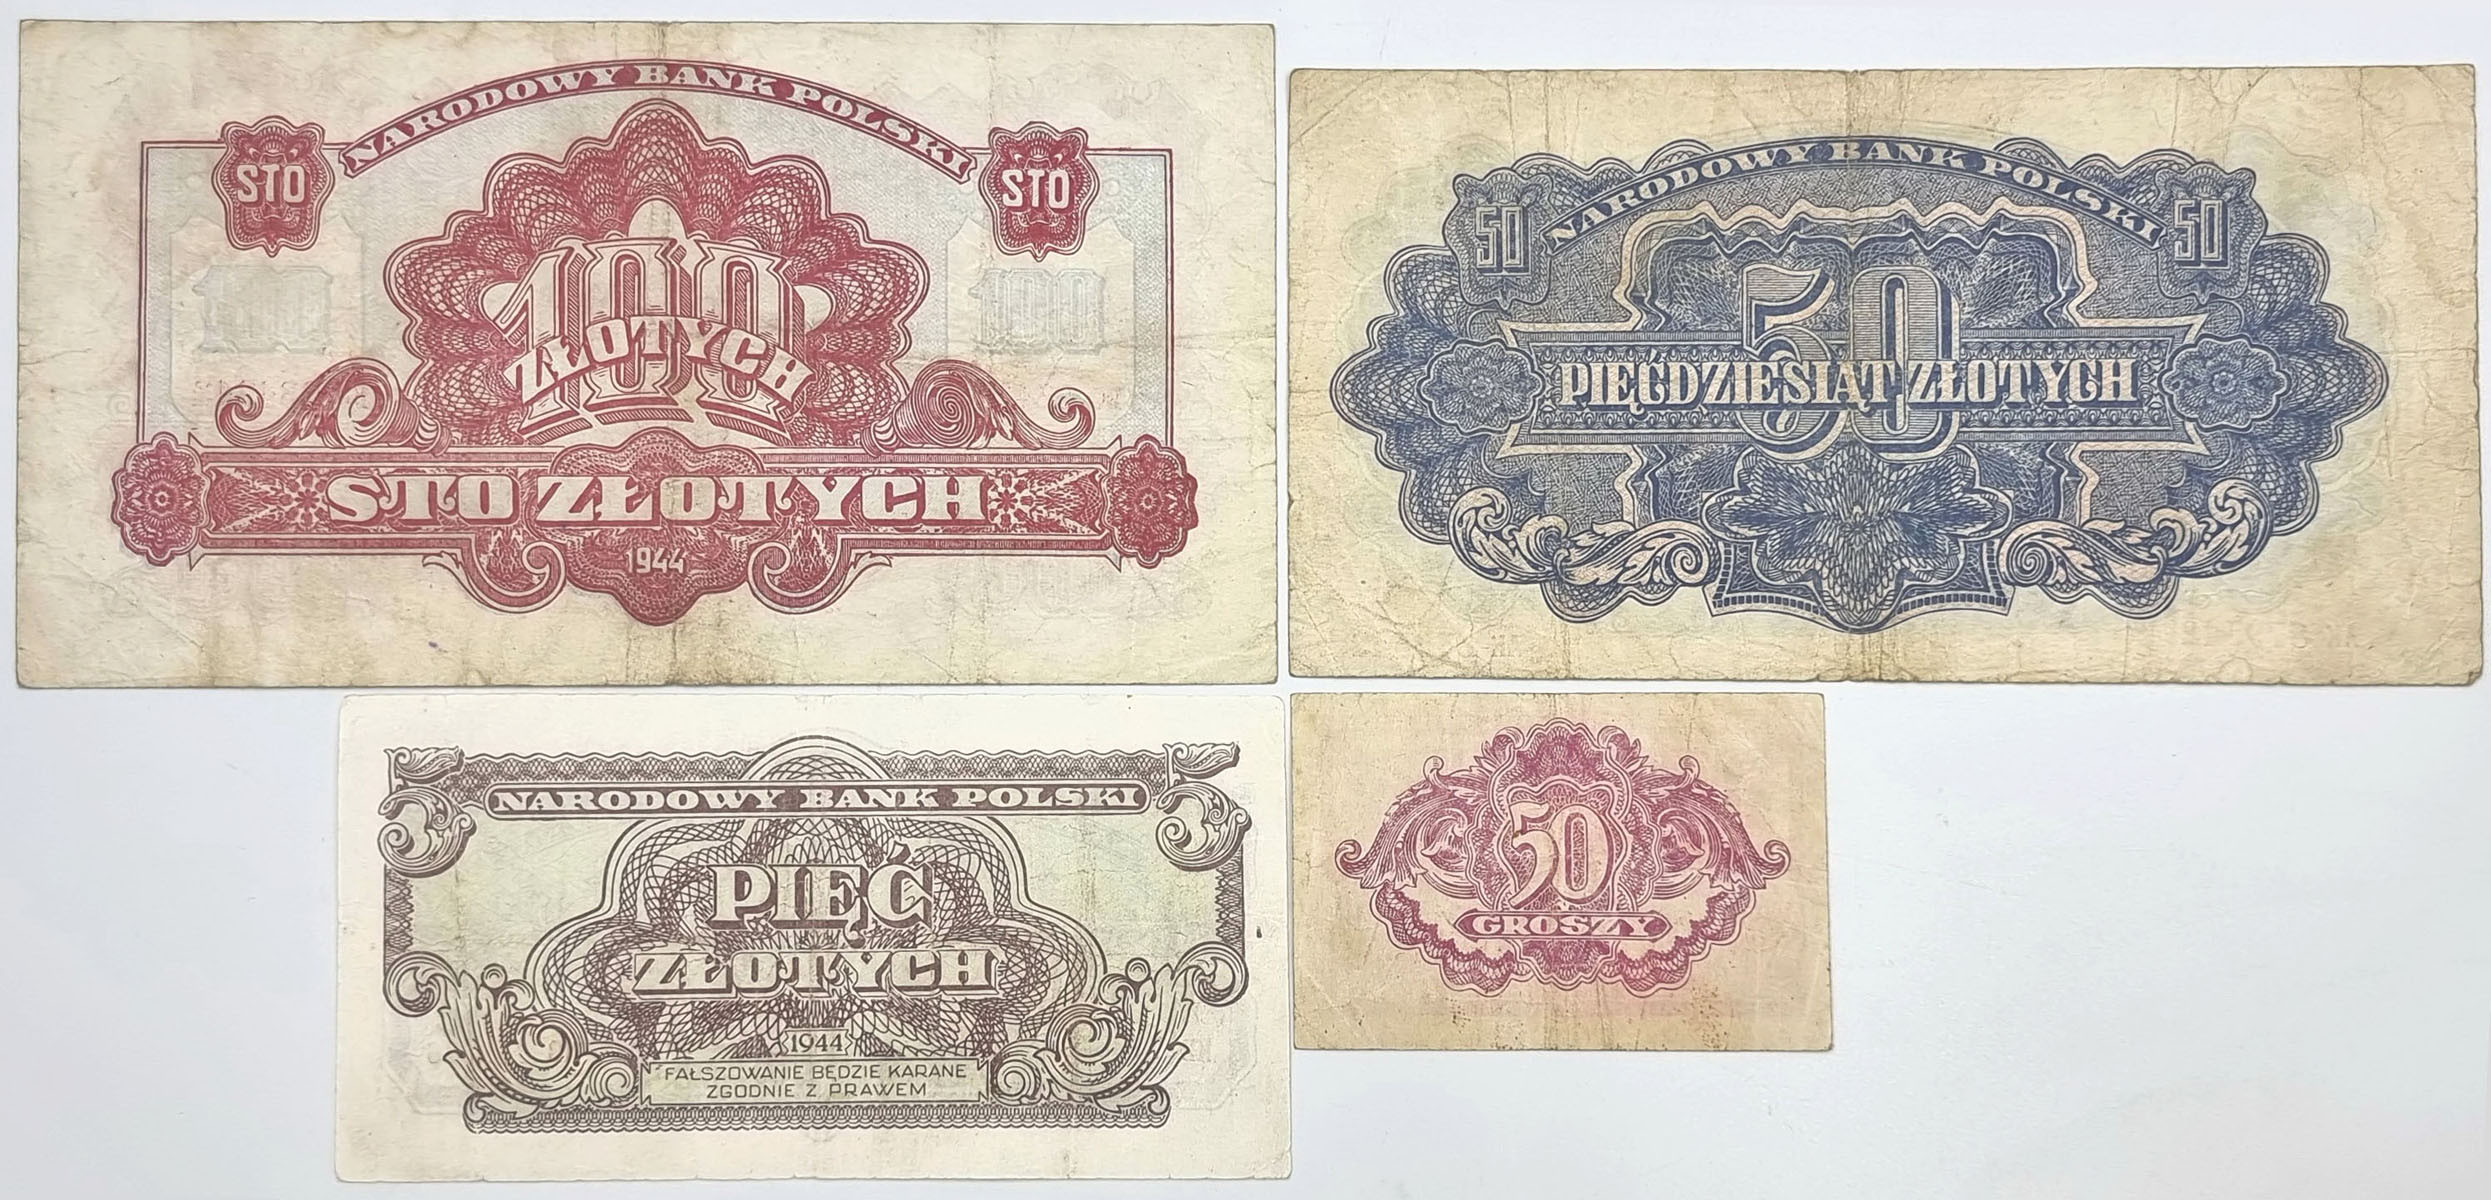 50 groszy do 100 złotych 1944, zestaw 4 banknotów